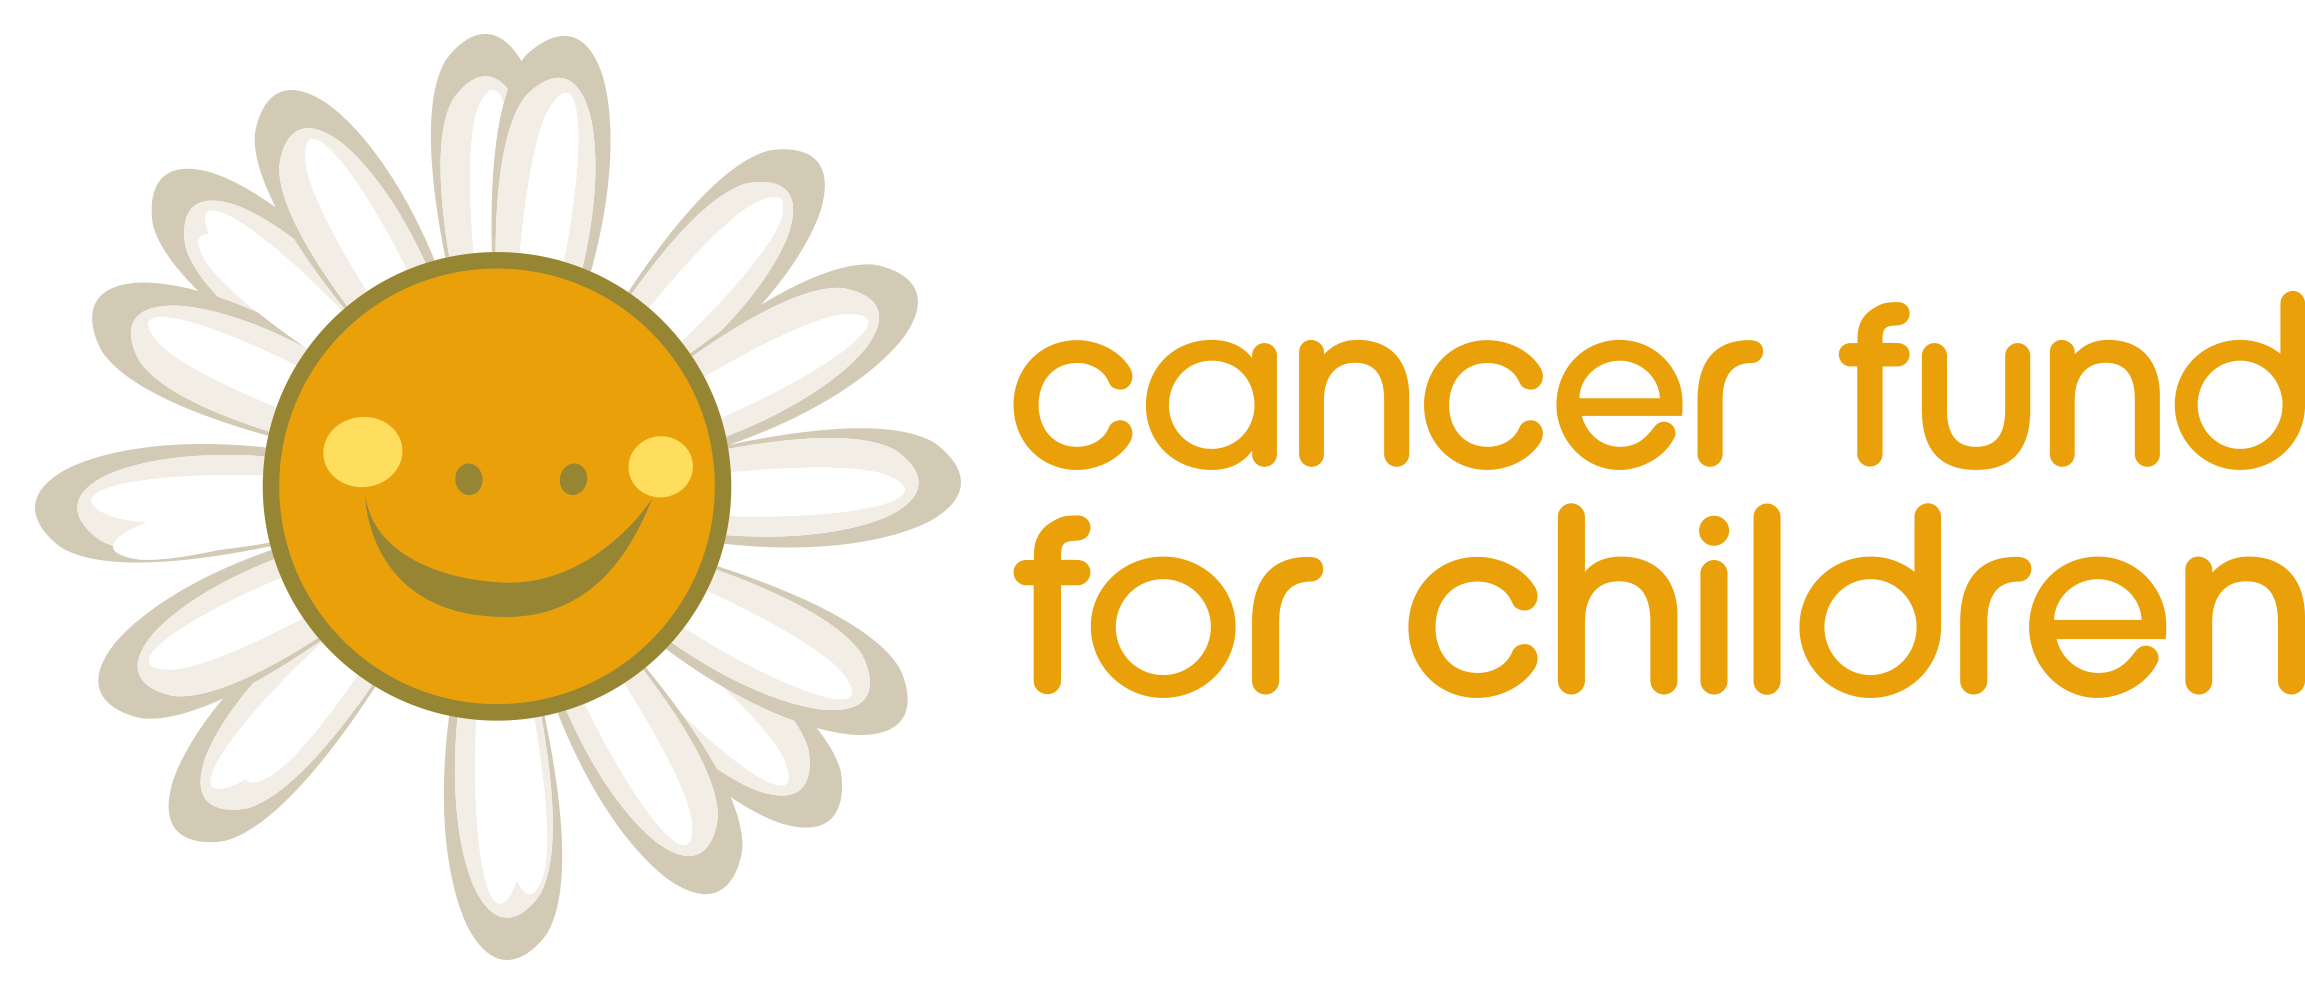 Cancer Fund For Children